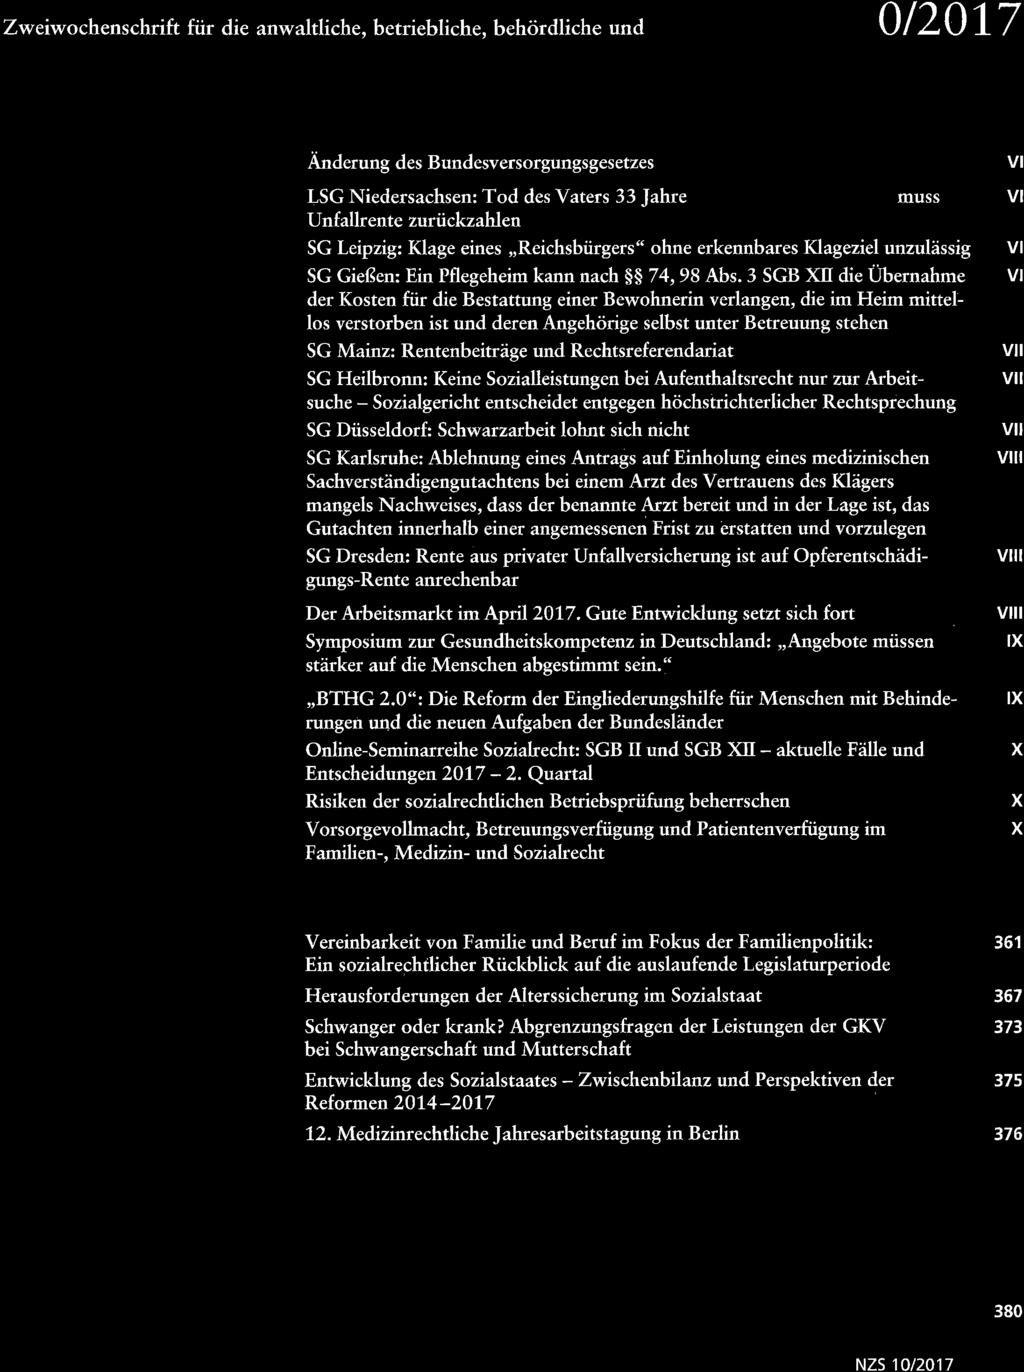 Neue Zeitschrift für Soziaïrecht Zweiwochenschrift für die anwaltliche, betriebliche, behördliche und NZS aktuell Gesetzgebung Rechtsprechung Mitteilungen Veranstabungen Aufsätze und Berichte